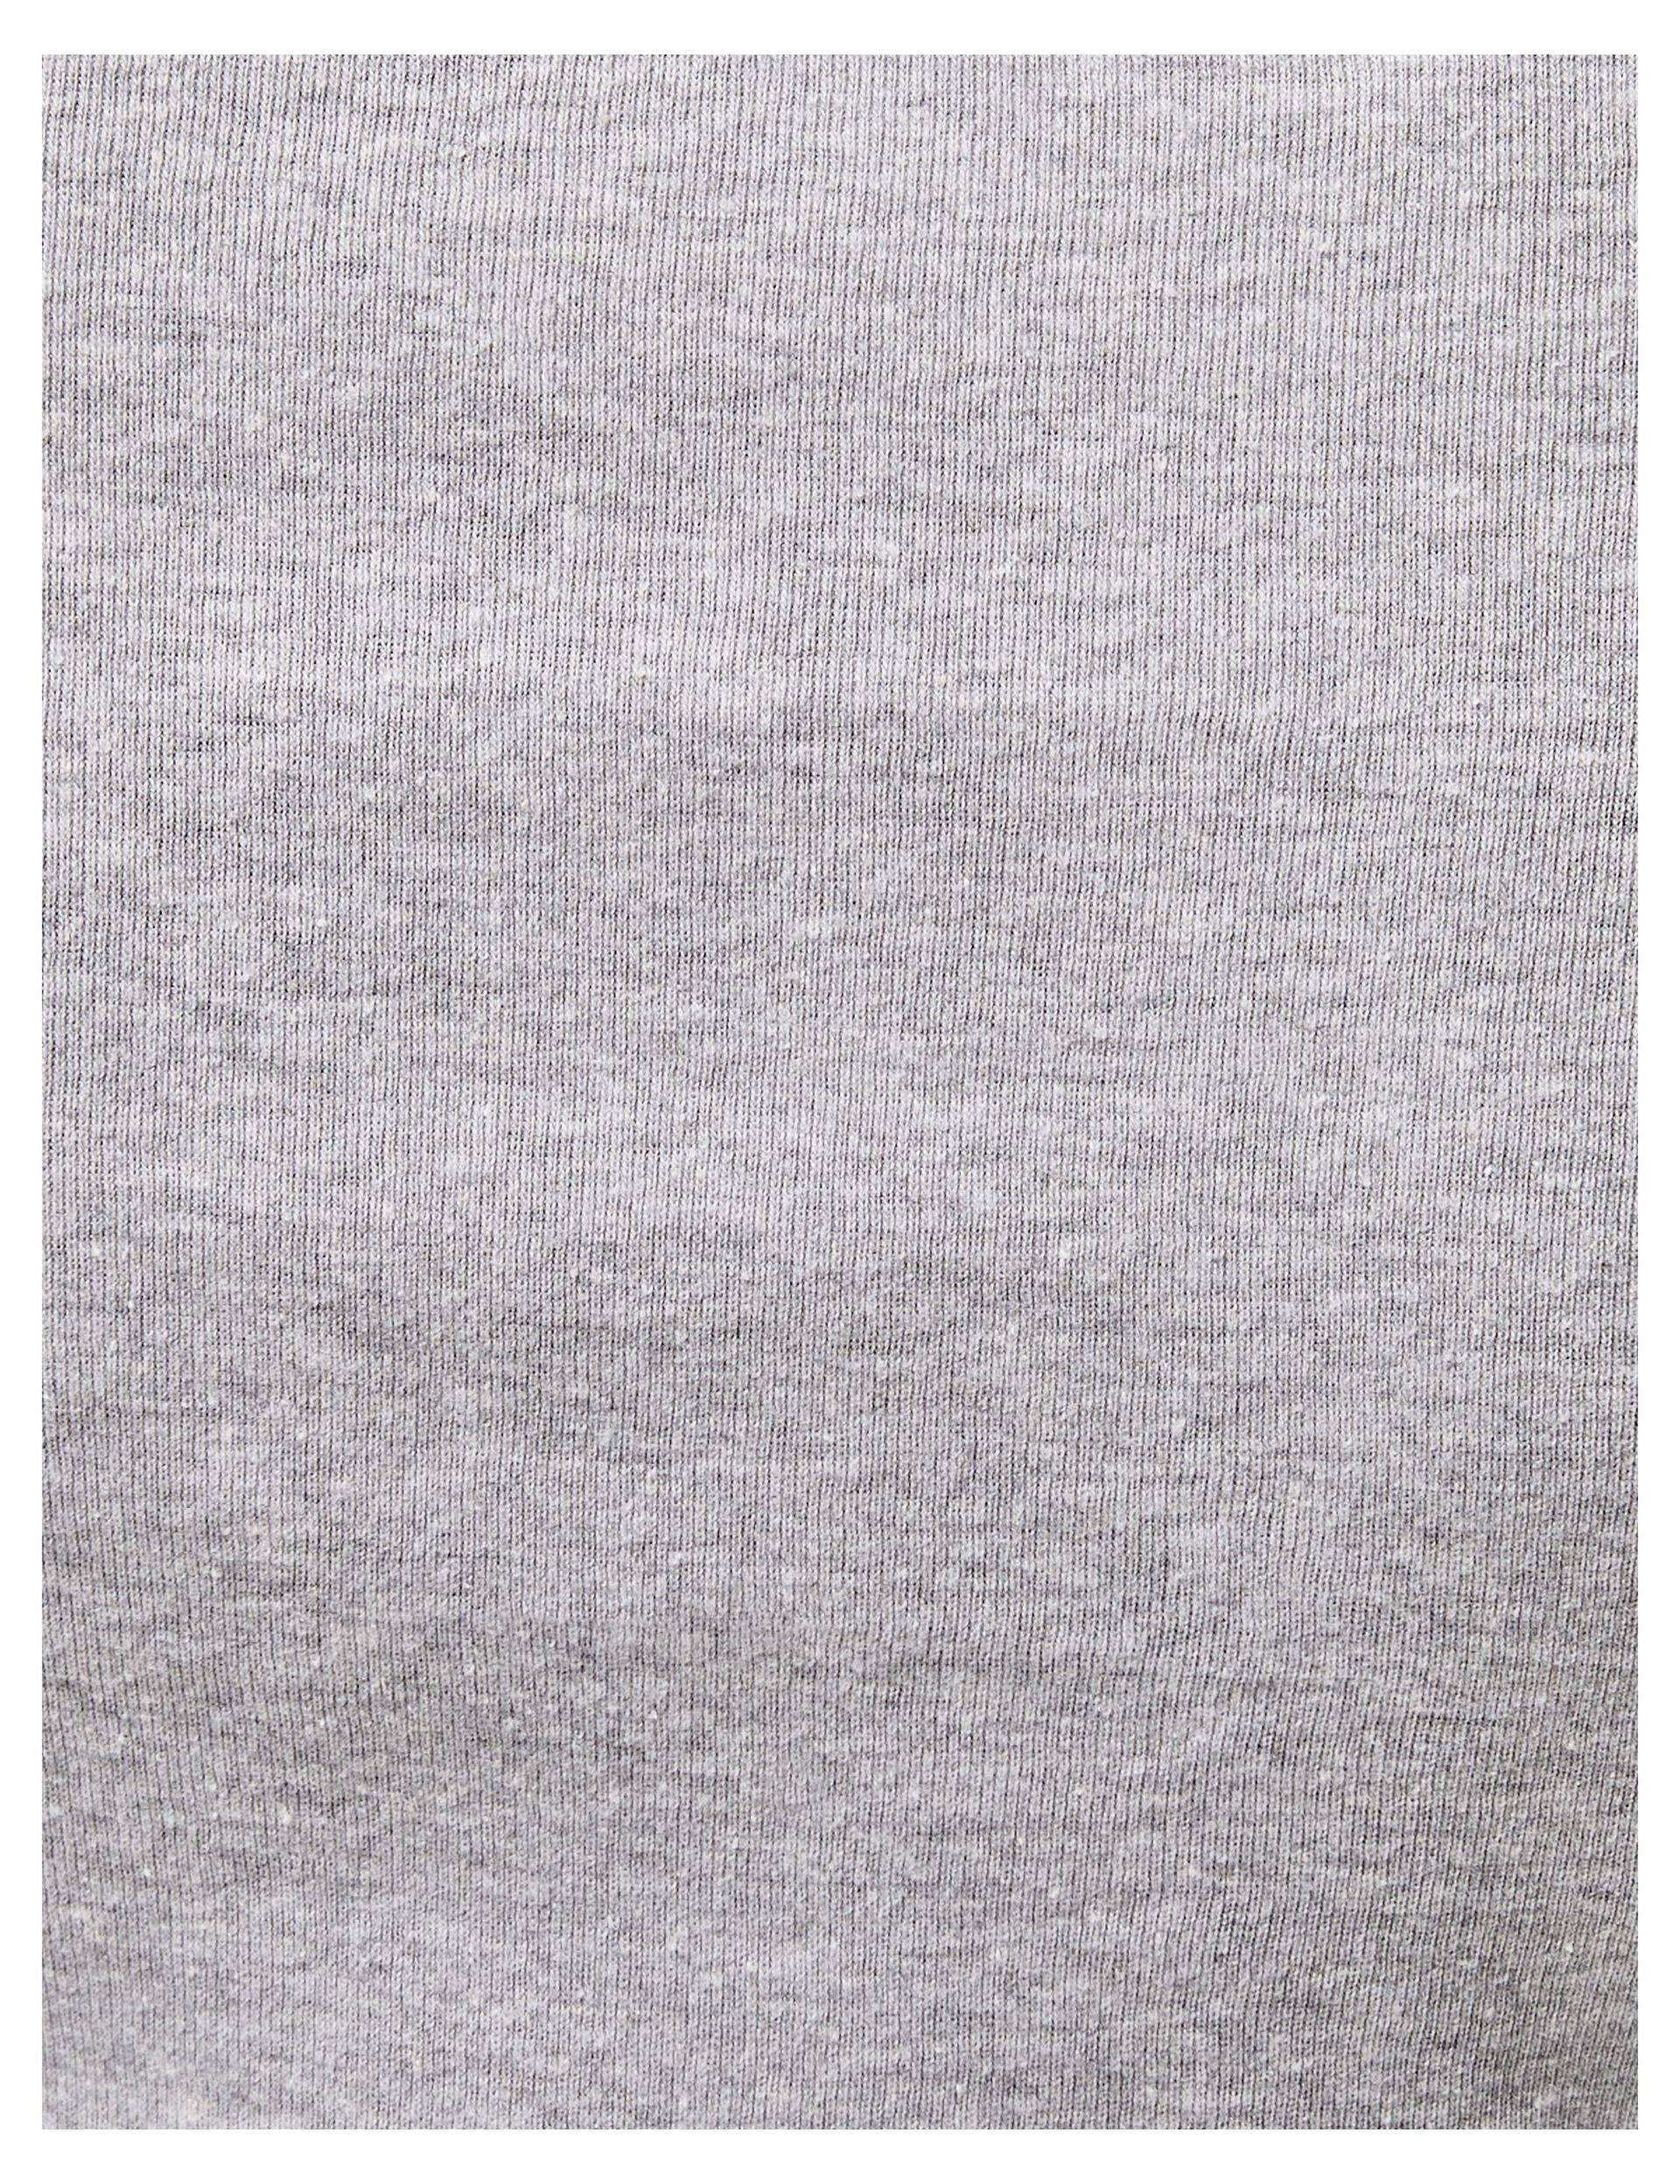 Tee-shirt basique manches longues gris